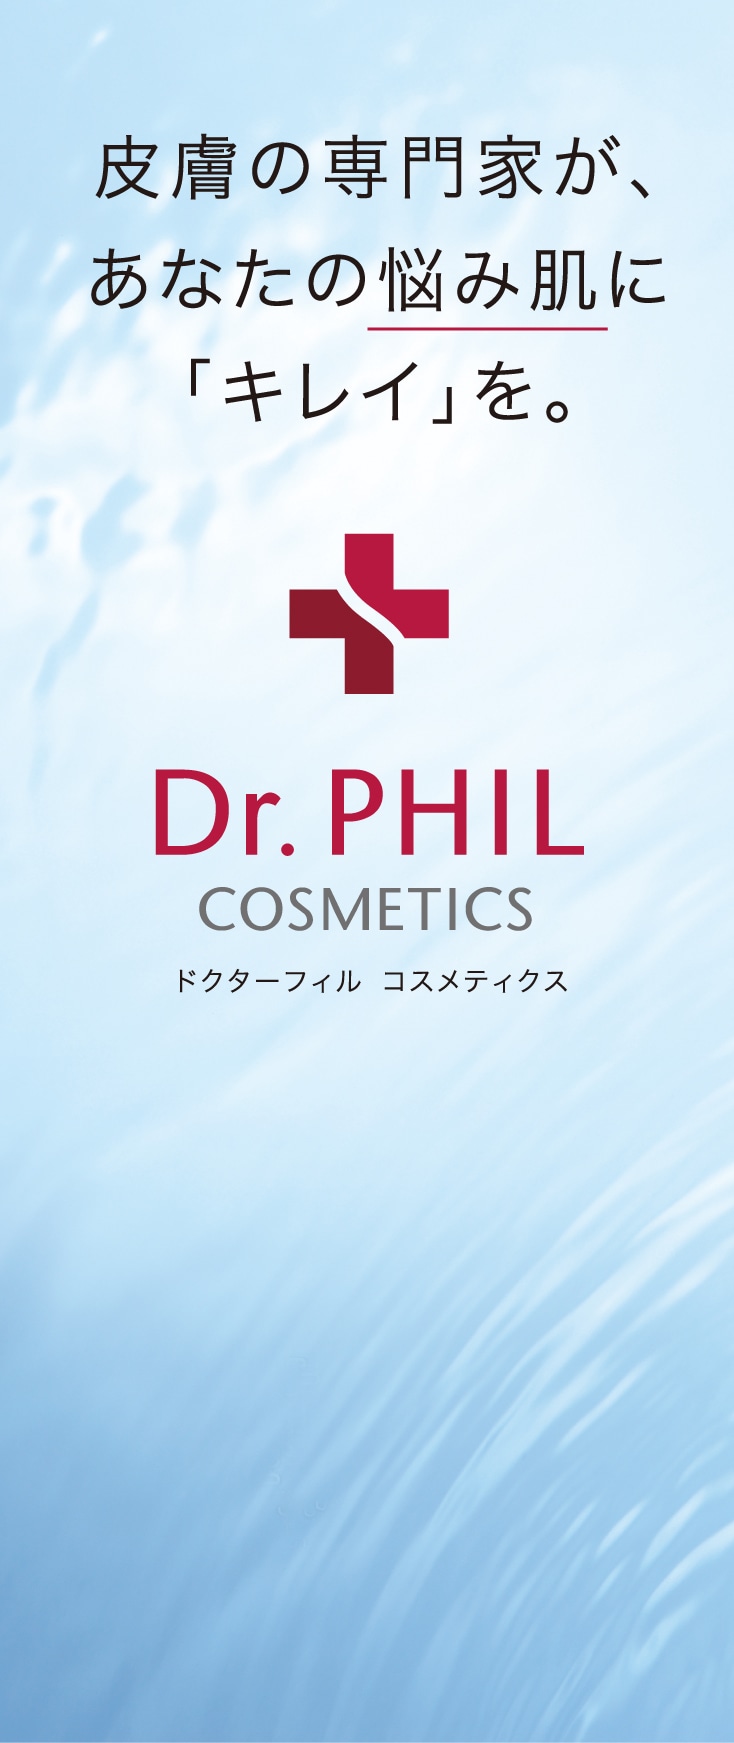 皮膚の専門家が、あなたの悩み肌に「キレイ」を。ドクターフィル コスメティクス